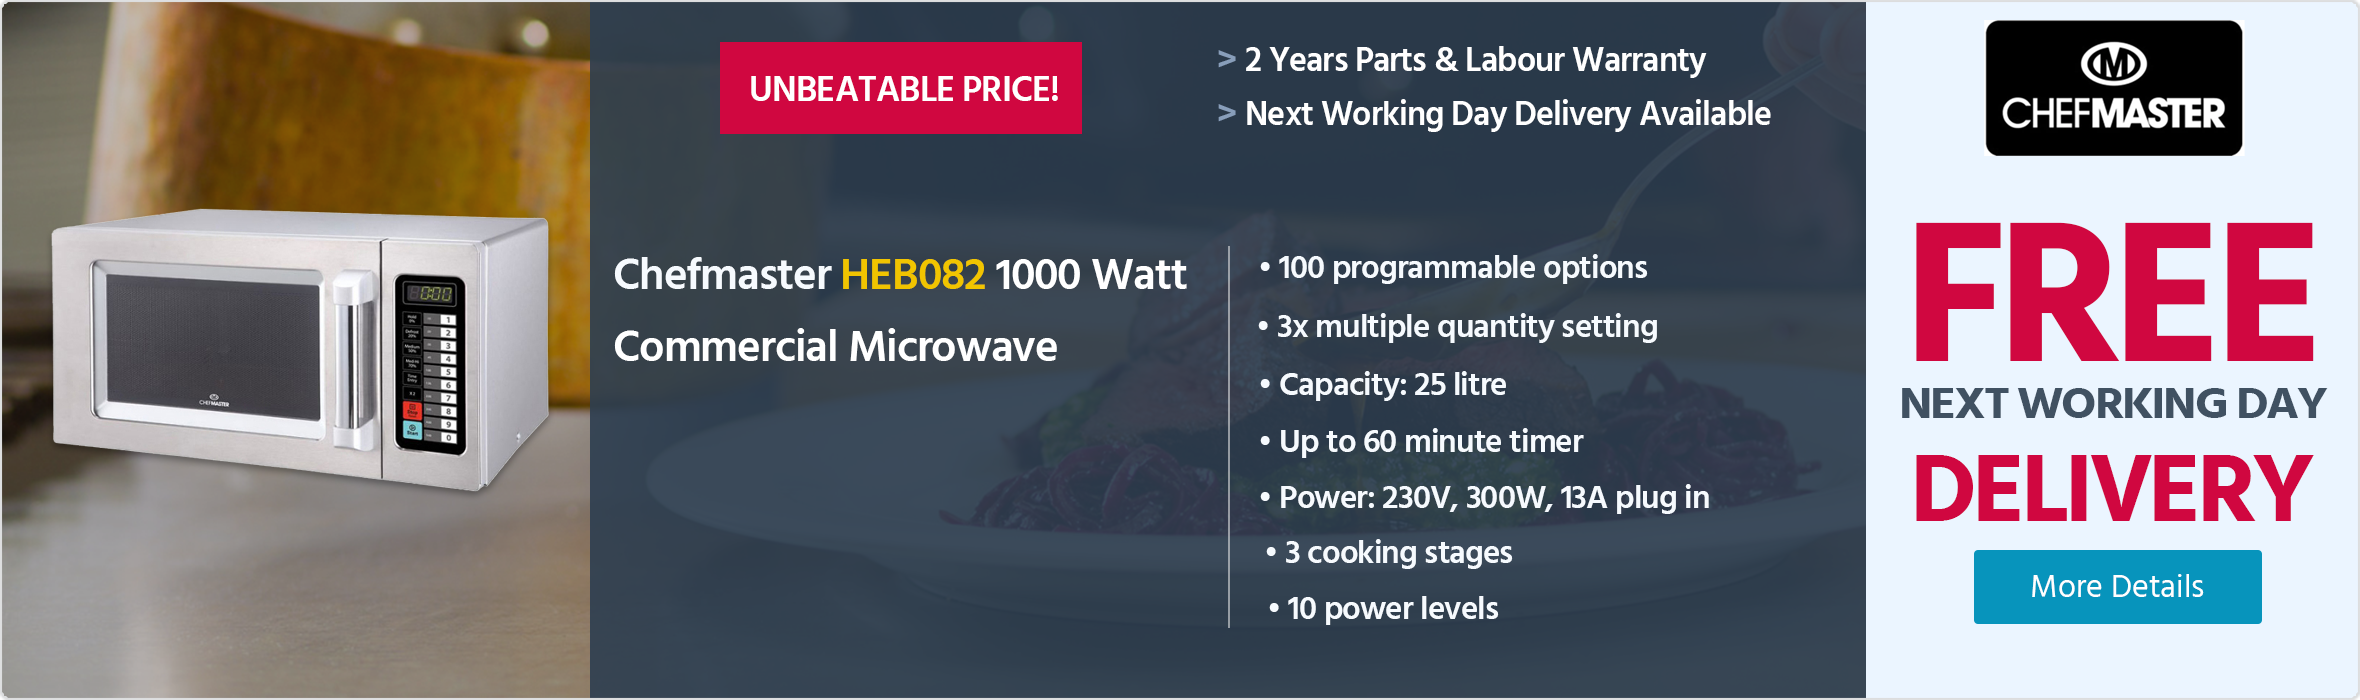 Chefmaster HEB082 1000 Watt Commercial Microwave